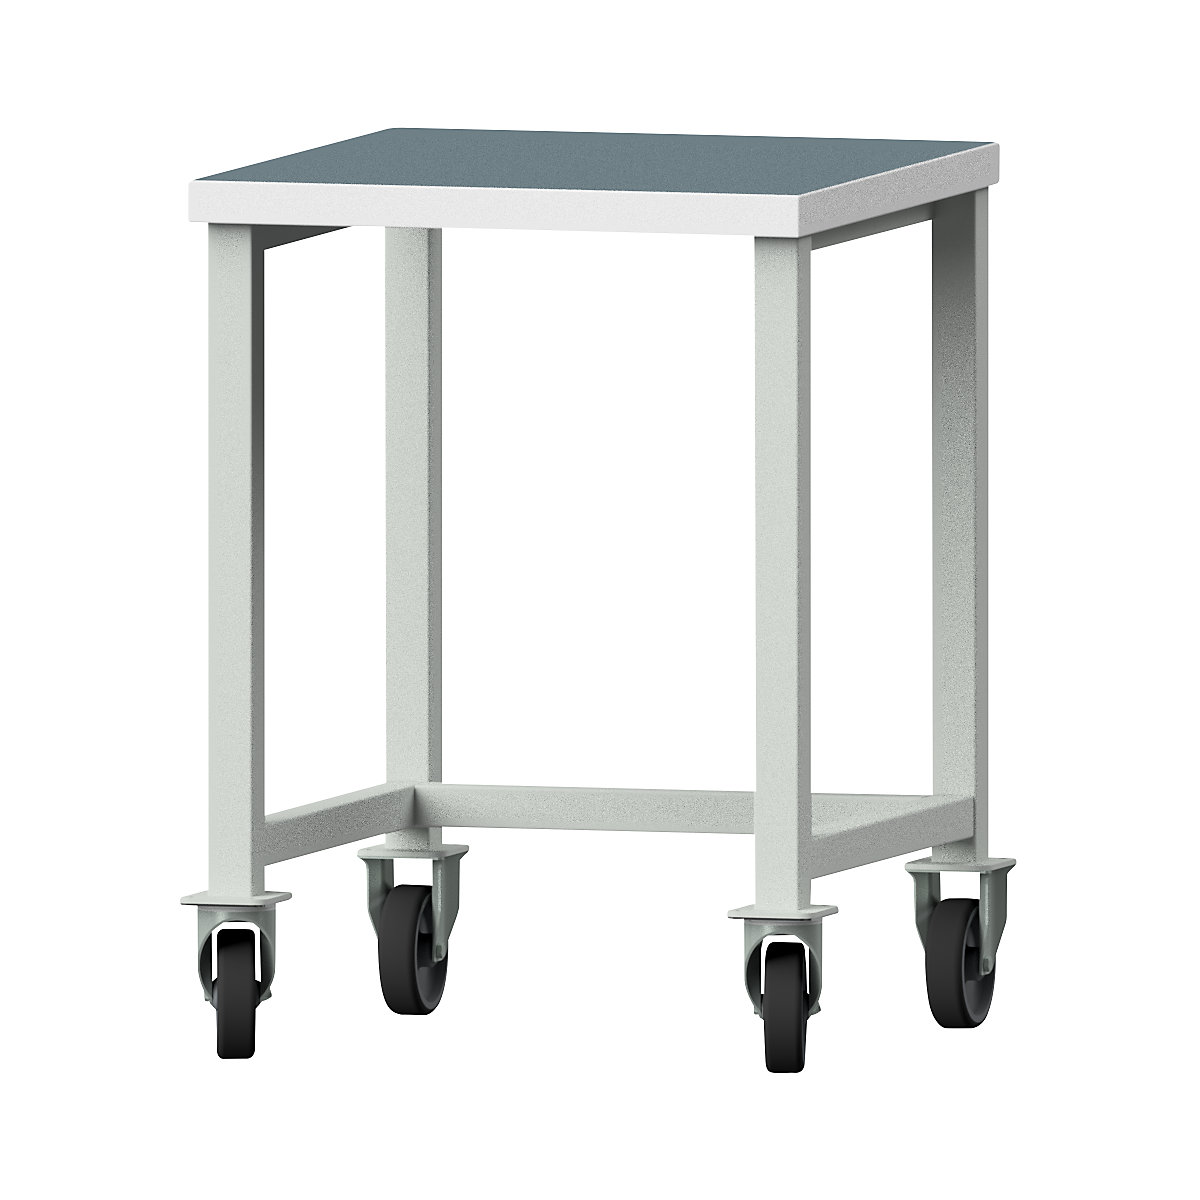 Kompaktowy stół warsztatowy – ANKE, szer. 605 mm, bez szafek dolnych, mobilny, płyta uniwersalna-3